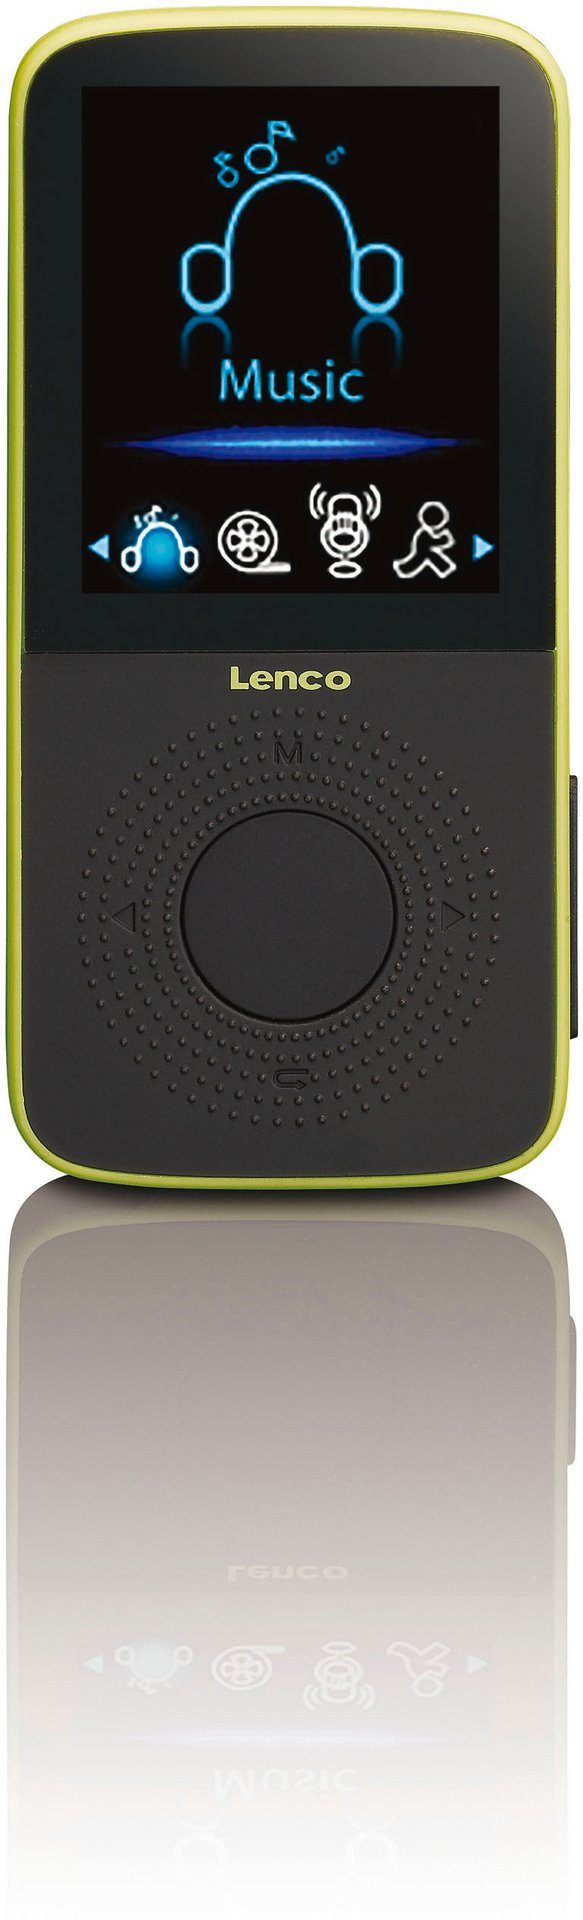 MP3-Player Schwarz/Grün PODO-153 integriertem MP3 mit Player (4 GB) Schrittzähler Lenco